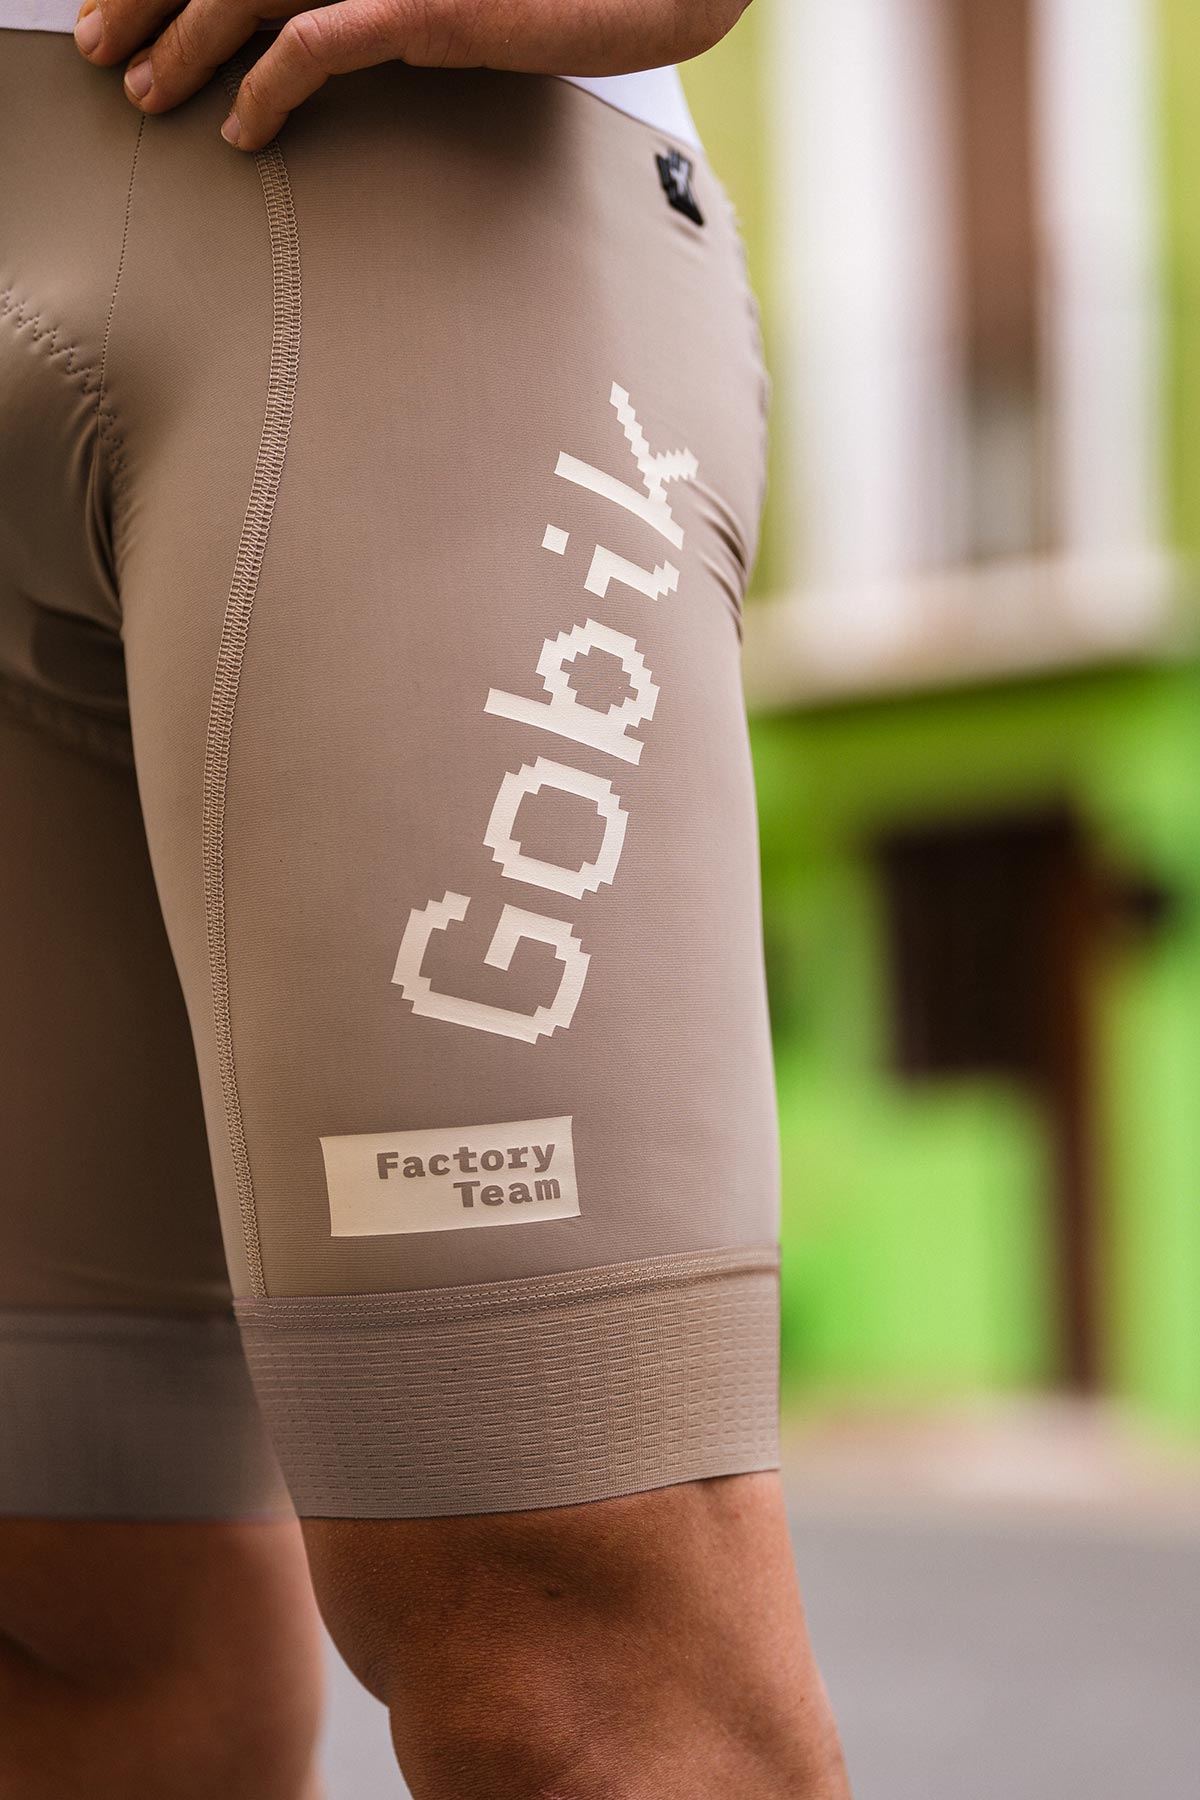 El Gobik Factory Team estrena el maillot más original de la temporada, diseñado por el grupo de artistas urbanos Boa Mistura